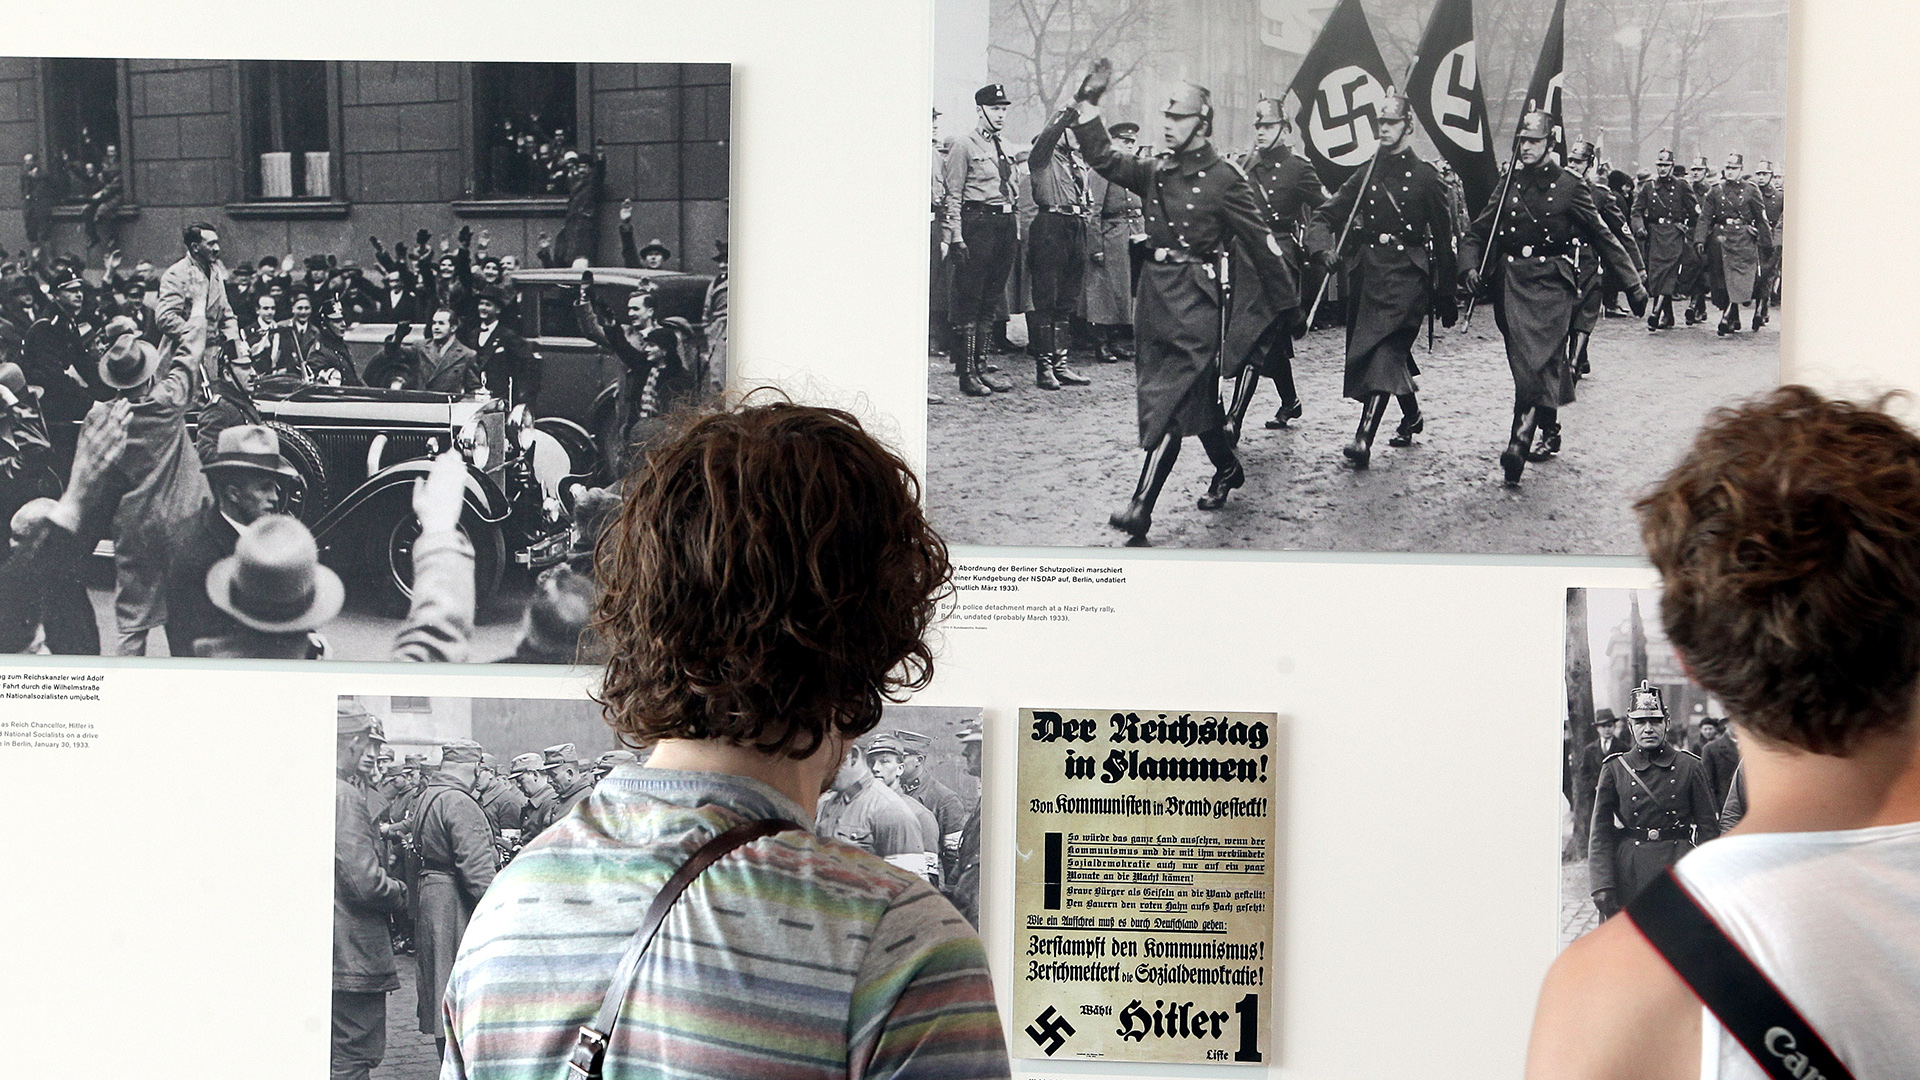 Jugendliche betrachten in der Ausstellung "Topografie des Terrors" in Berlin Fotografien der NS-Zeit. | picture alliance / dpa